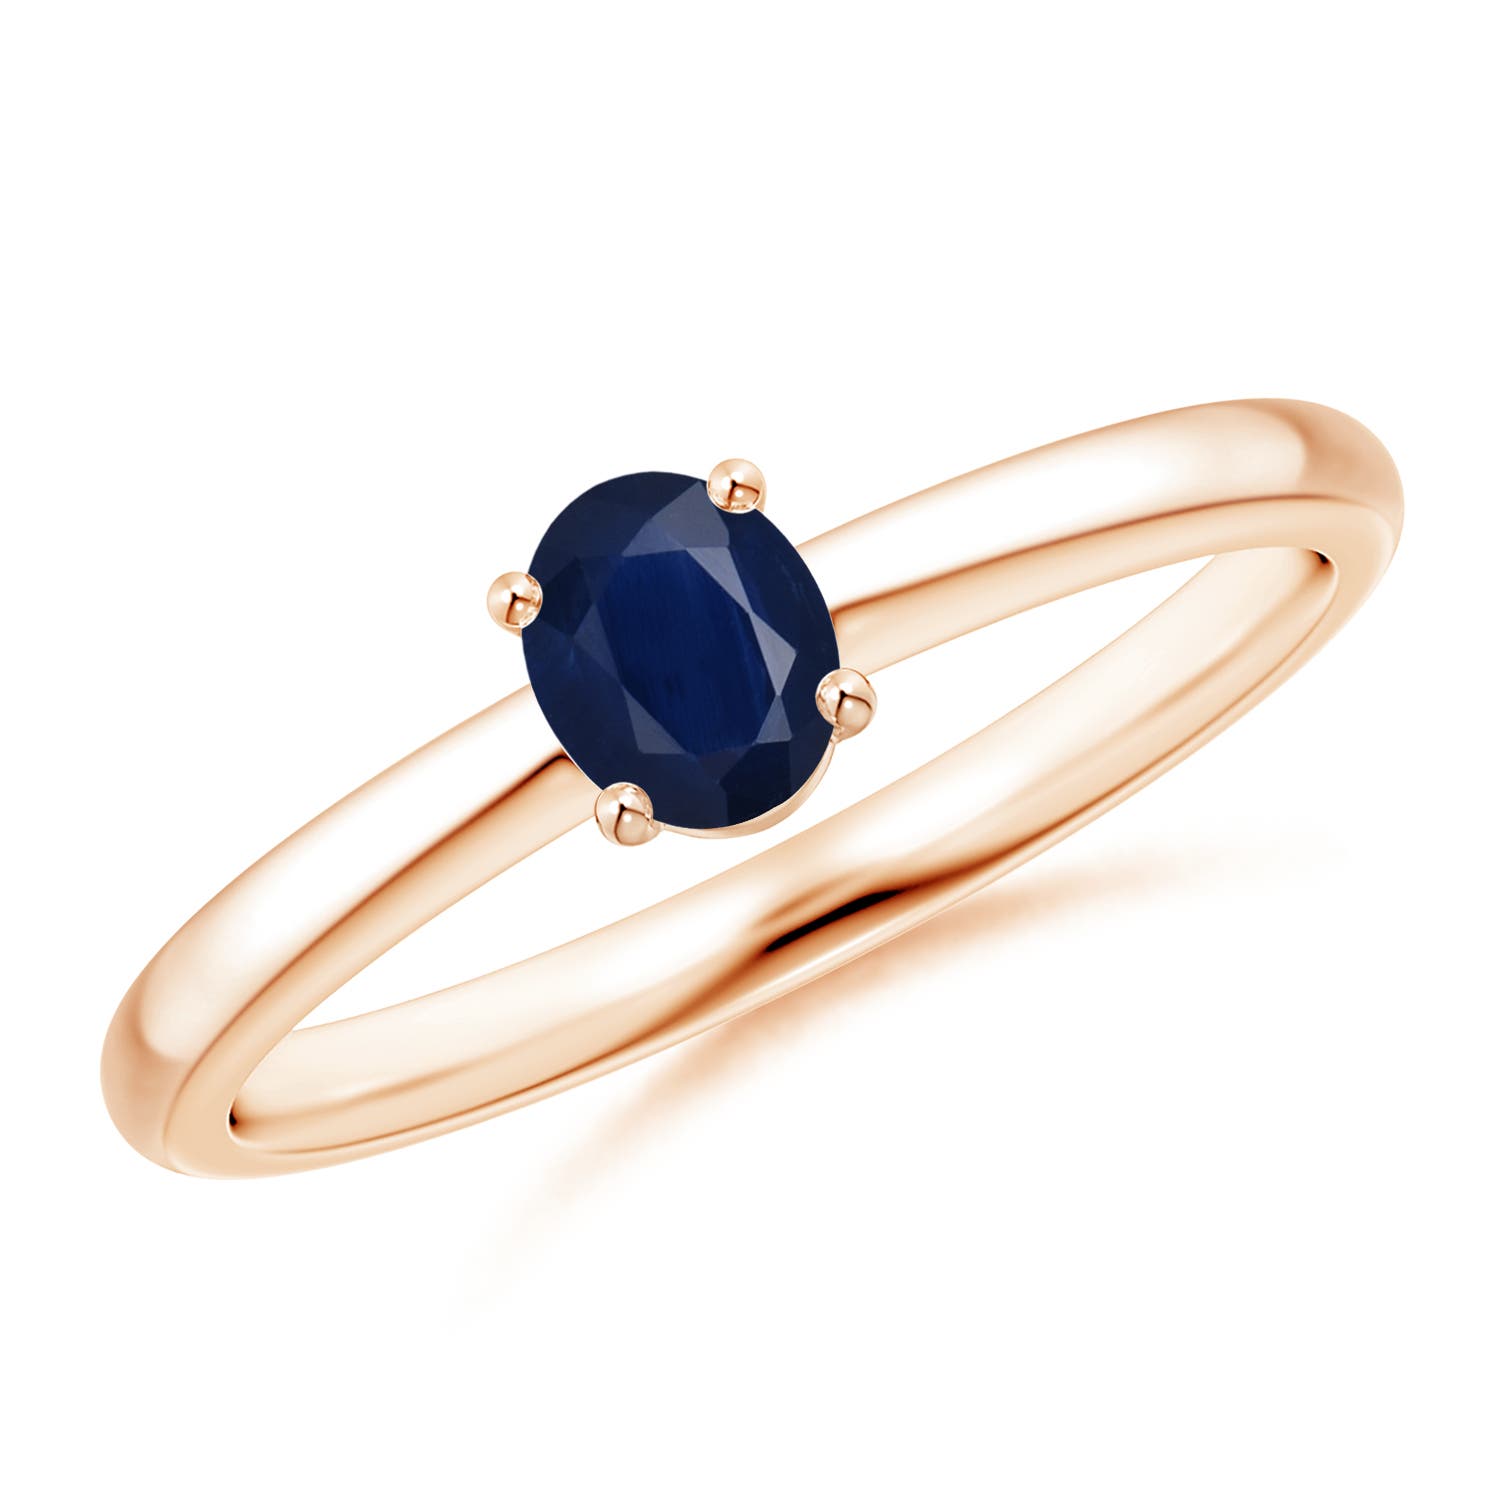 A - Blue Sapphire / 0.4 CT / 14 KT Rose Gold